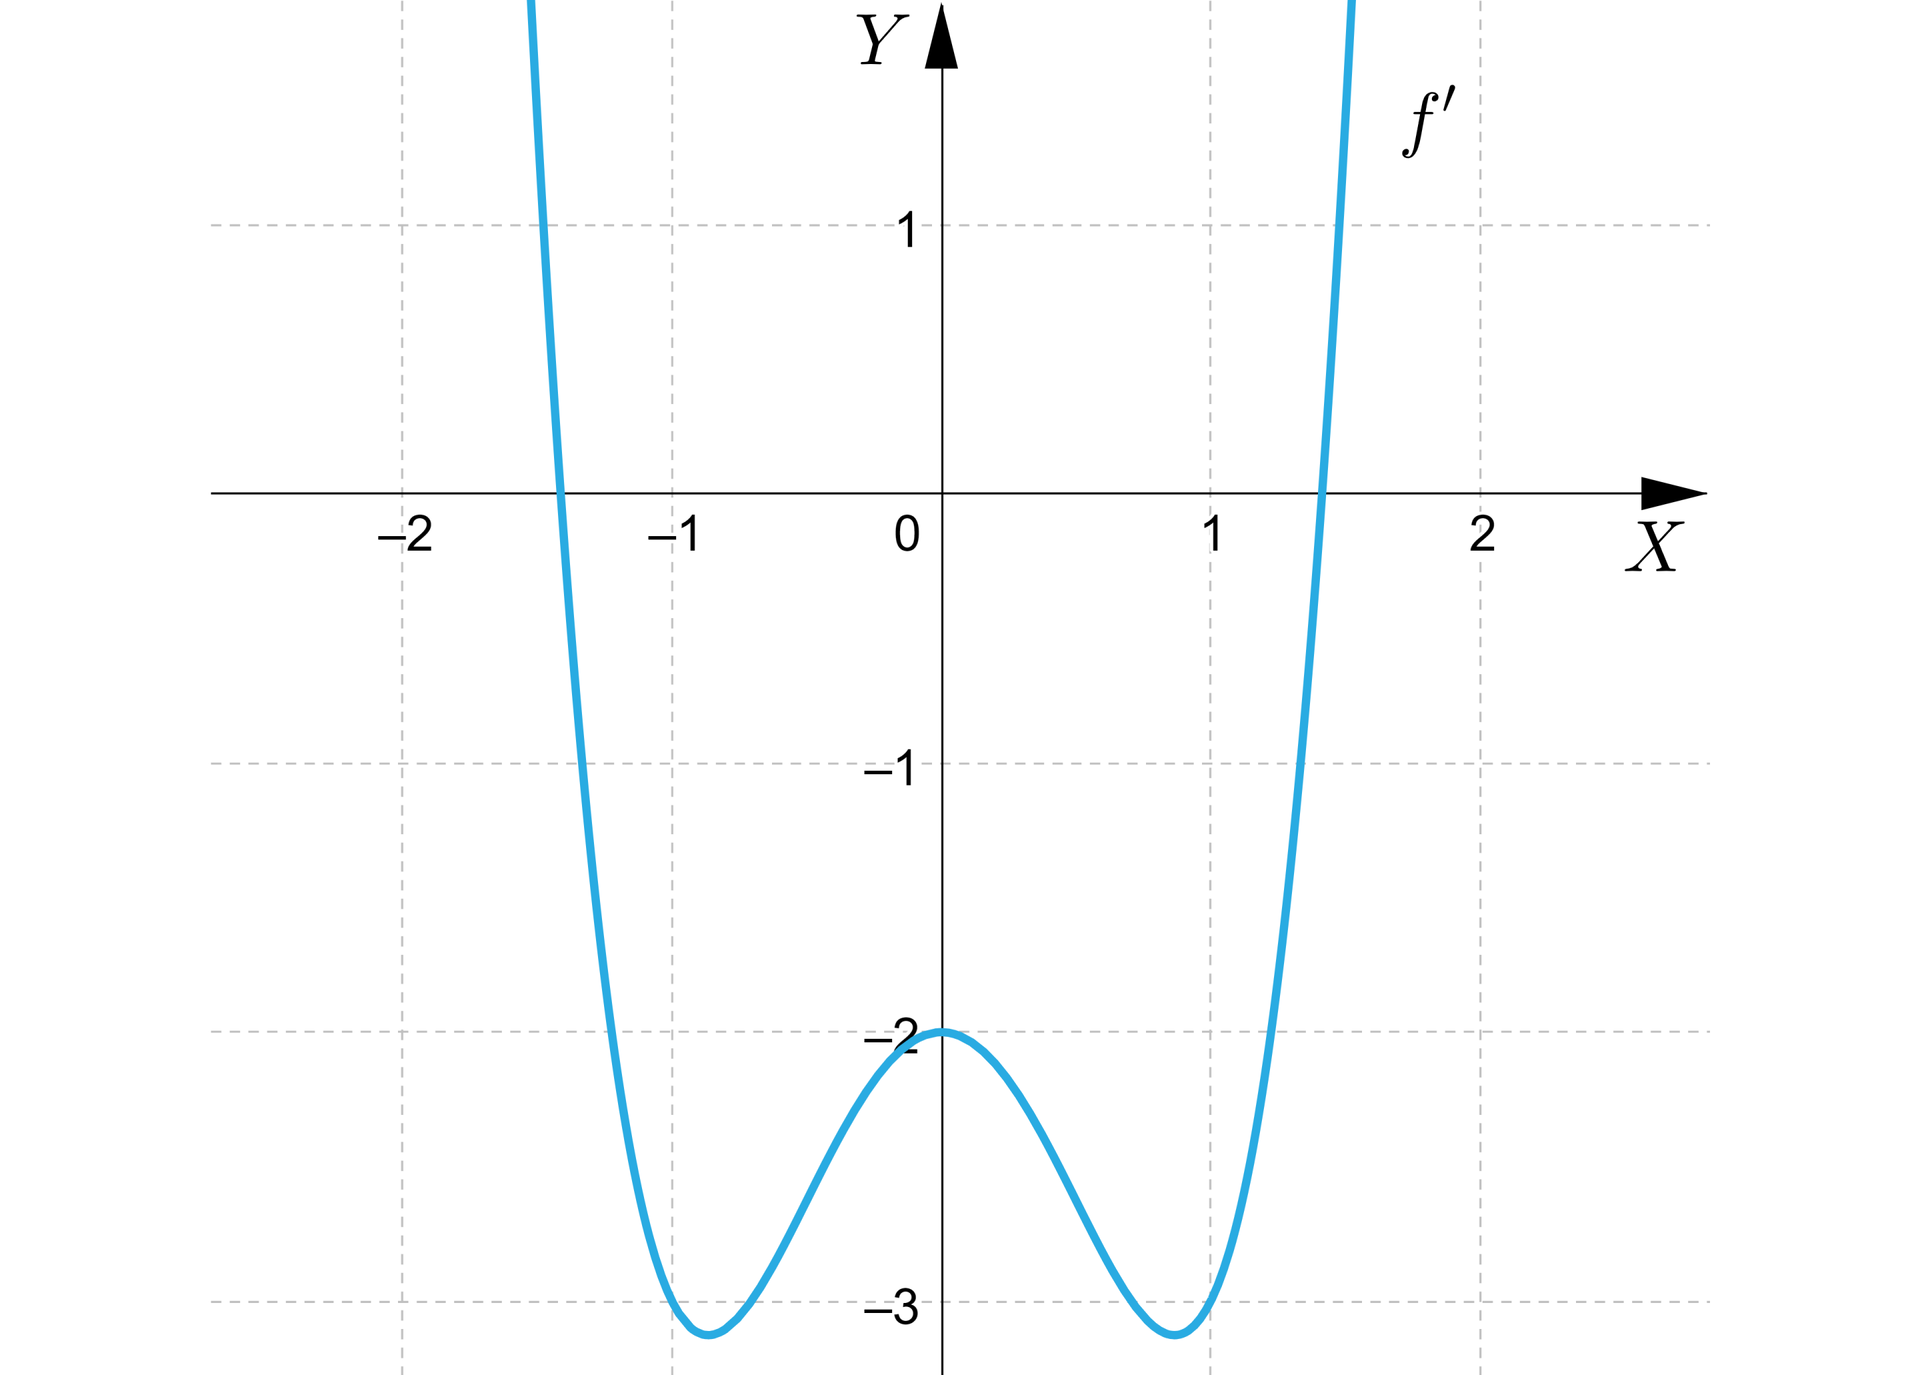 Ilustracja przedstawia układ współrzędnych z poziomą osią x od minus trzy do jeden i pionową osią y od minus dwa do dwa. W układzie zaznaczono wykres f', który jest krzywą o następującym kształcie: wykres pojawia się w drugiej ćwiartce układu następnie przecina oś y w okolicach wartości minus jeden i pół następnie biegnie do do punktu znajdującego się w trzeciej ćwiartce układu, gdzie zmienia swój bieg i biegnie po łuku to punktu nawias zero średnik minus dwa zamknięcie nawiasu, dalej biegnie do punktu znajdującego się poniżej punktu,w którym wykres przecina oś y i znajdującego się w czwartej ćwiartce układu, dalej wykres biegnie po lekkim łuku, przecina oś y i wychodzi poza płaszczyznę układu w pierwszej ćwiartce. Wykres jest symetryczny względem osi y.